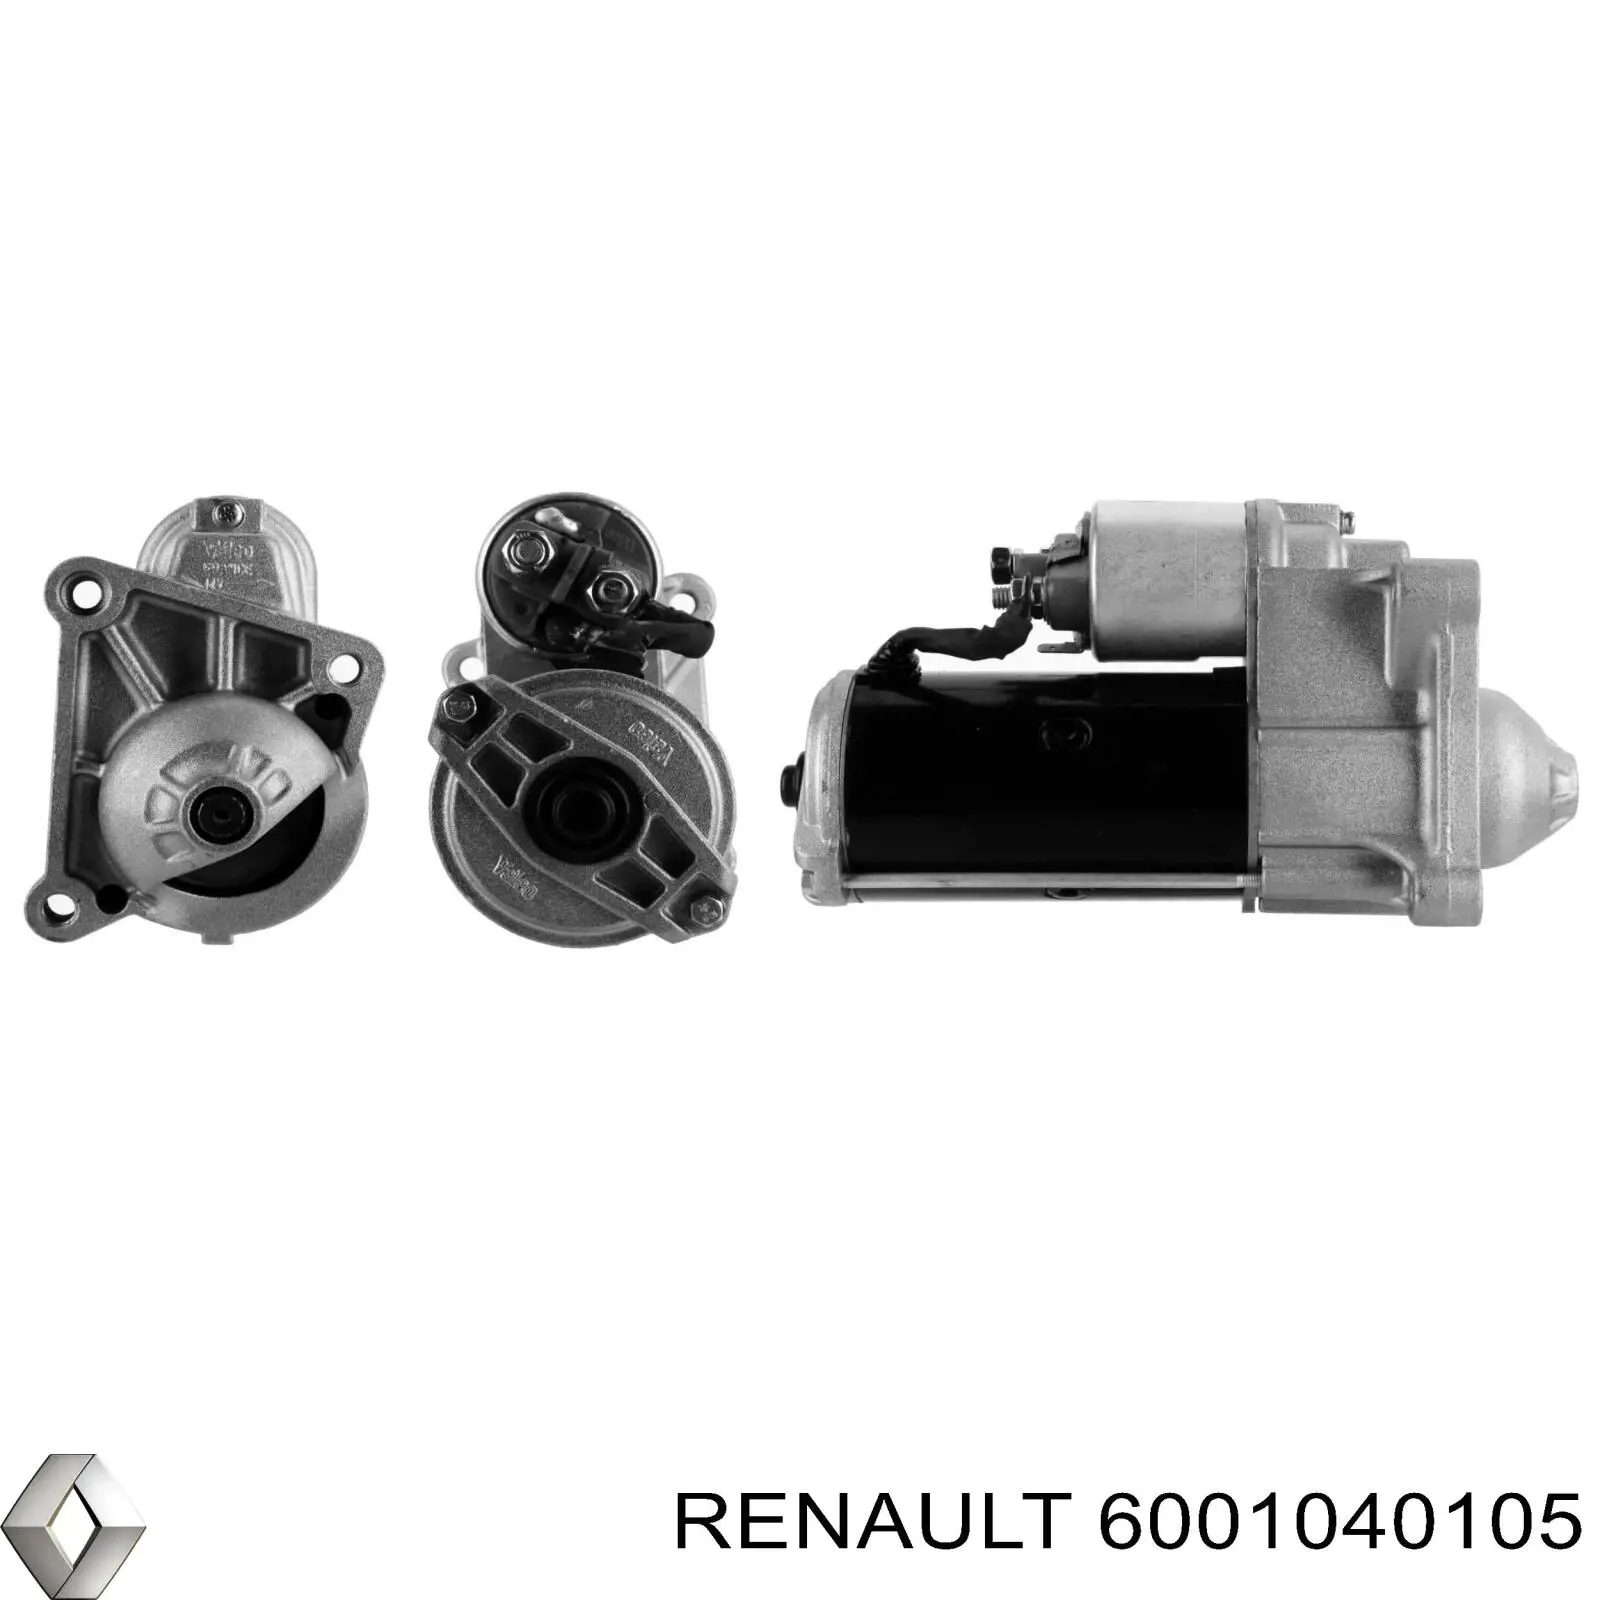 6001040105 Renault (RVI) motor de arranque